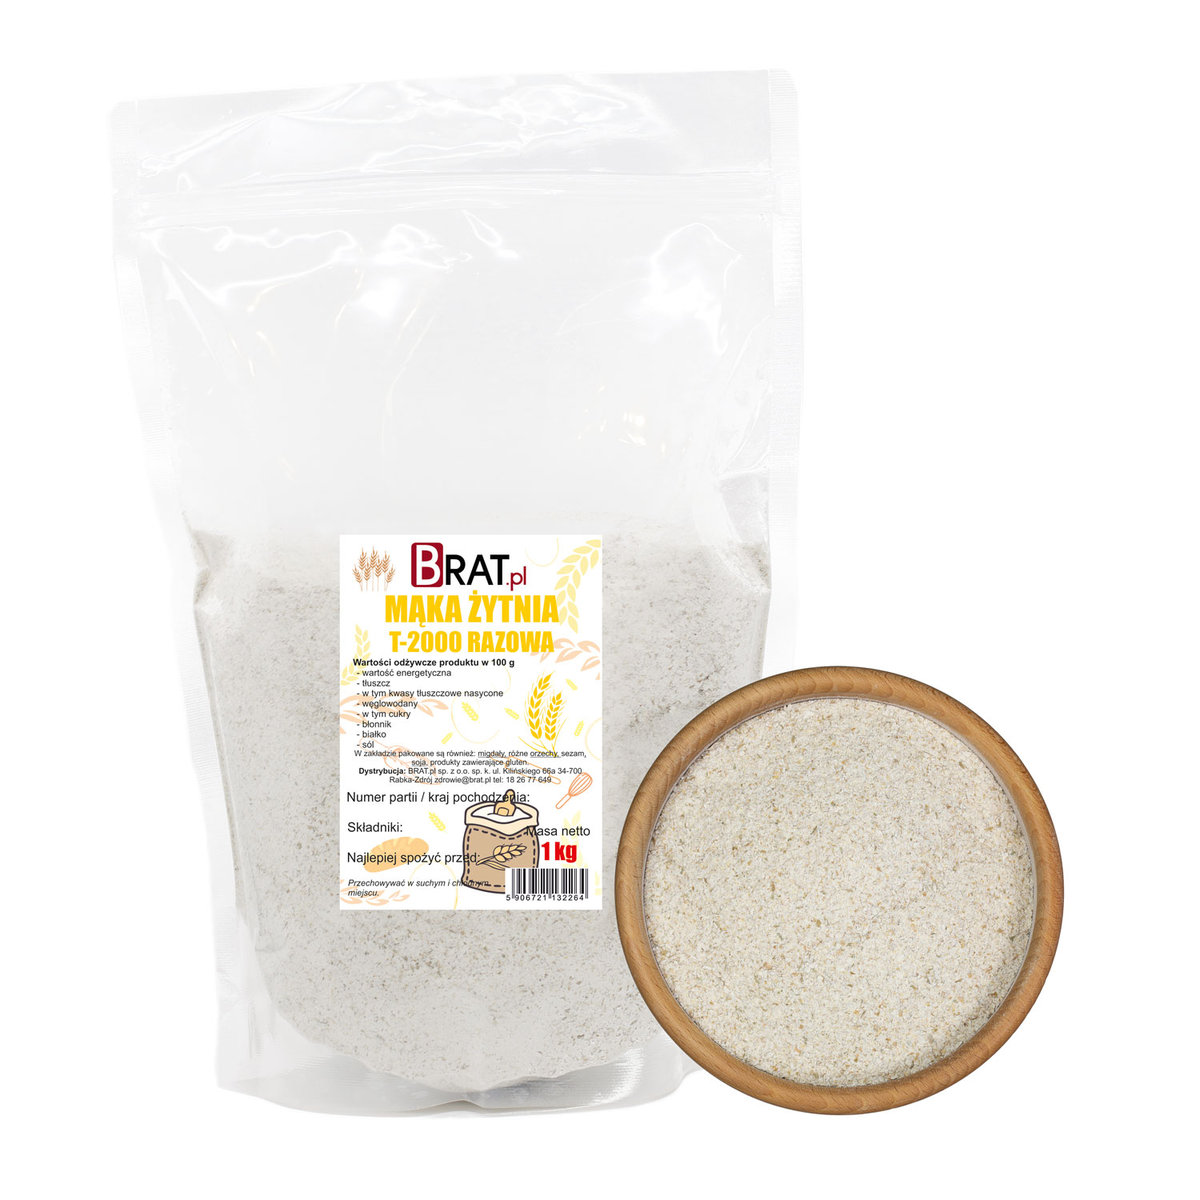 Mąka żytnia T-2000 razowa 1kg